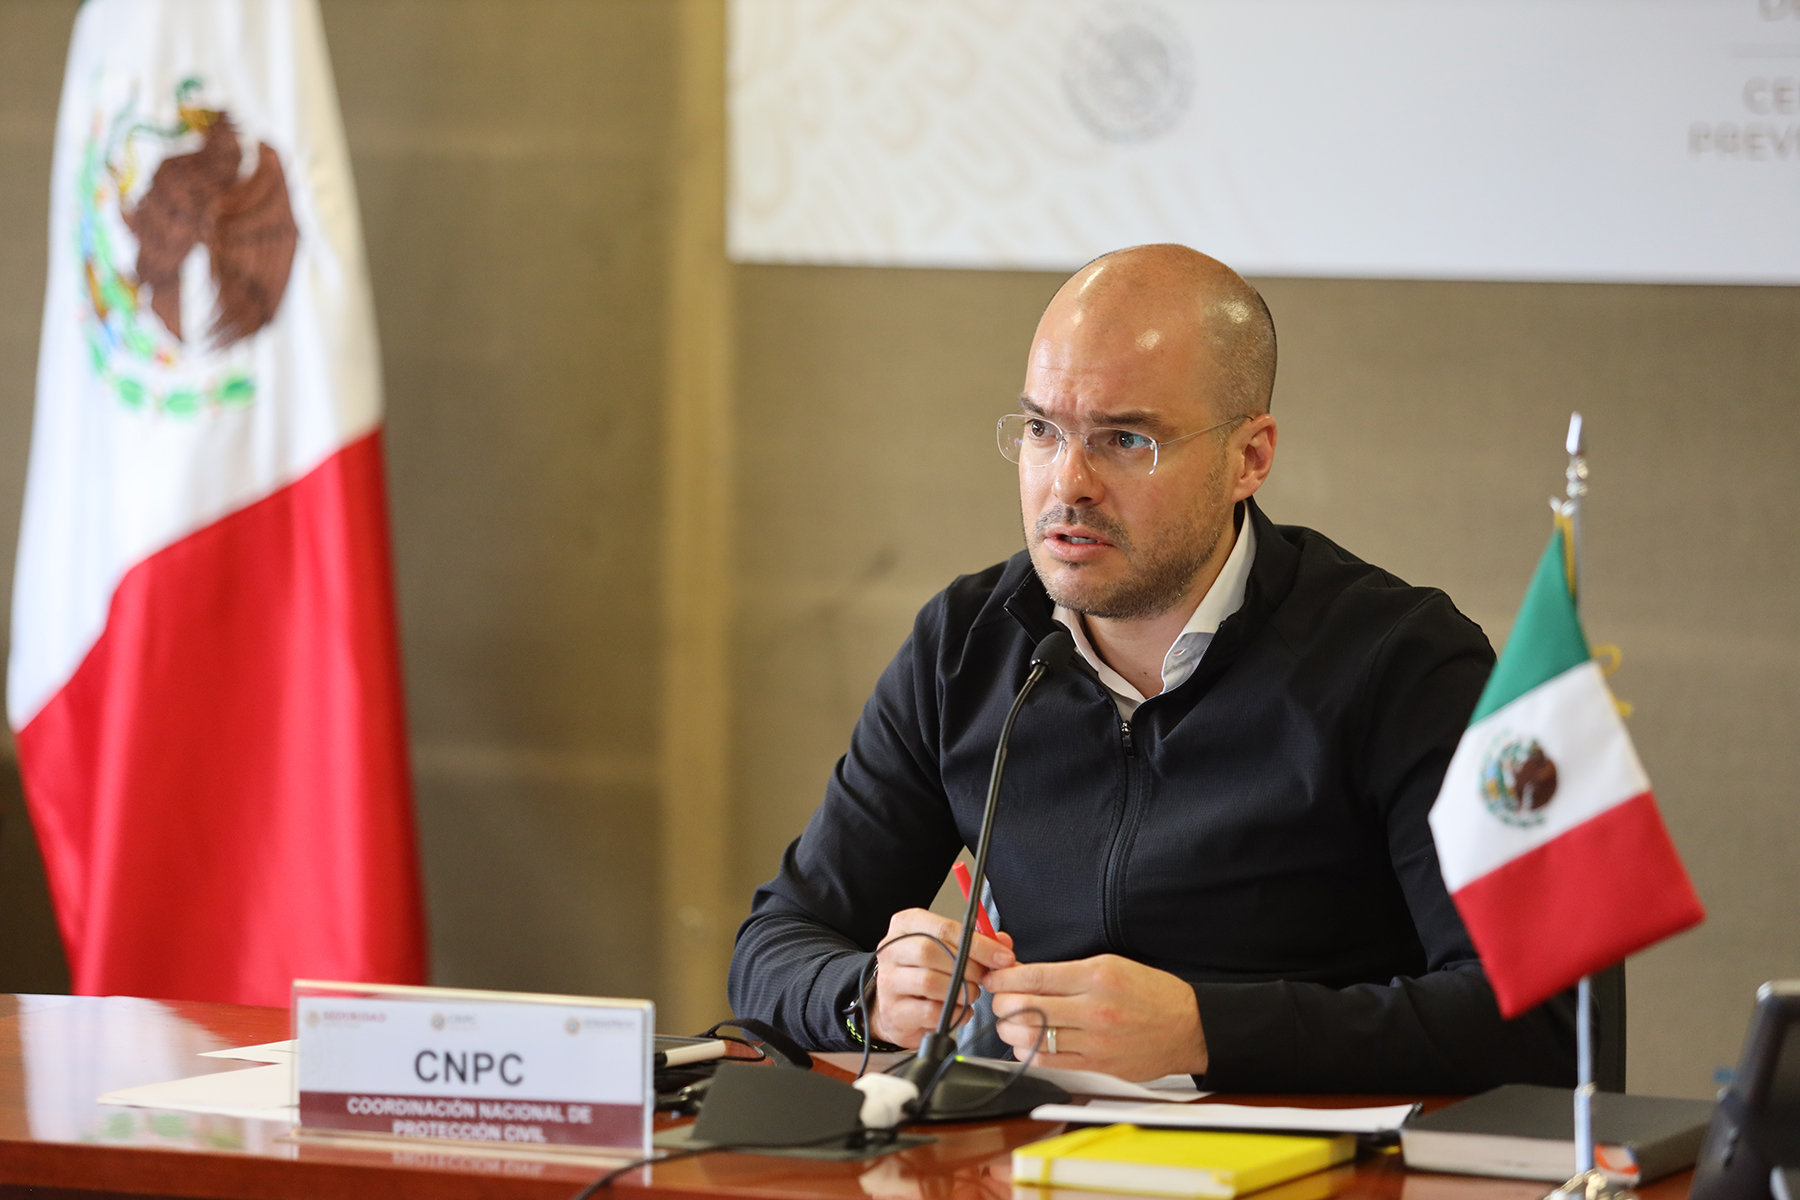 El coordinador nacional de Protección Civil, David León Romero, encabezó una videoconferencia donde participaron Conagua y otras dependencias para presentar un balance del cierre de la temporada invernal 2019-2020.